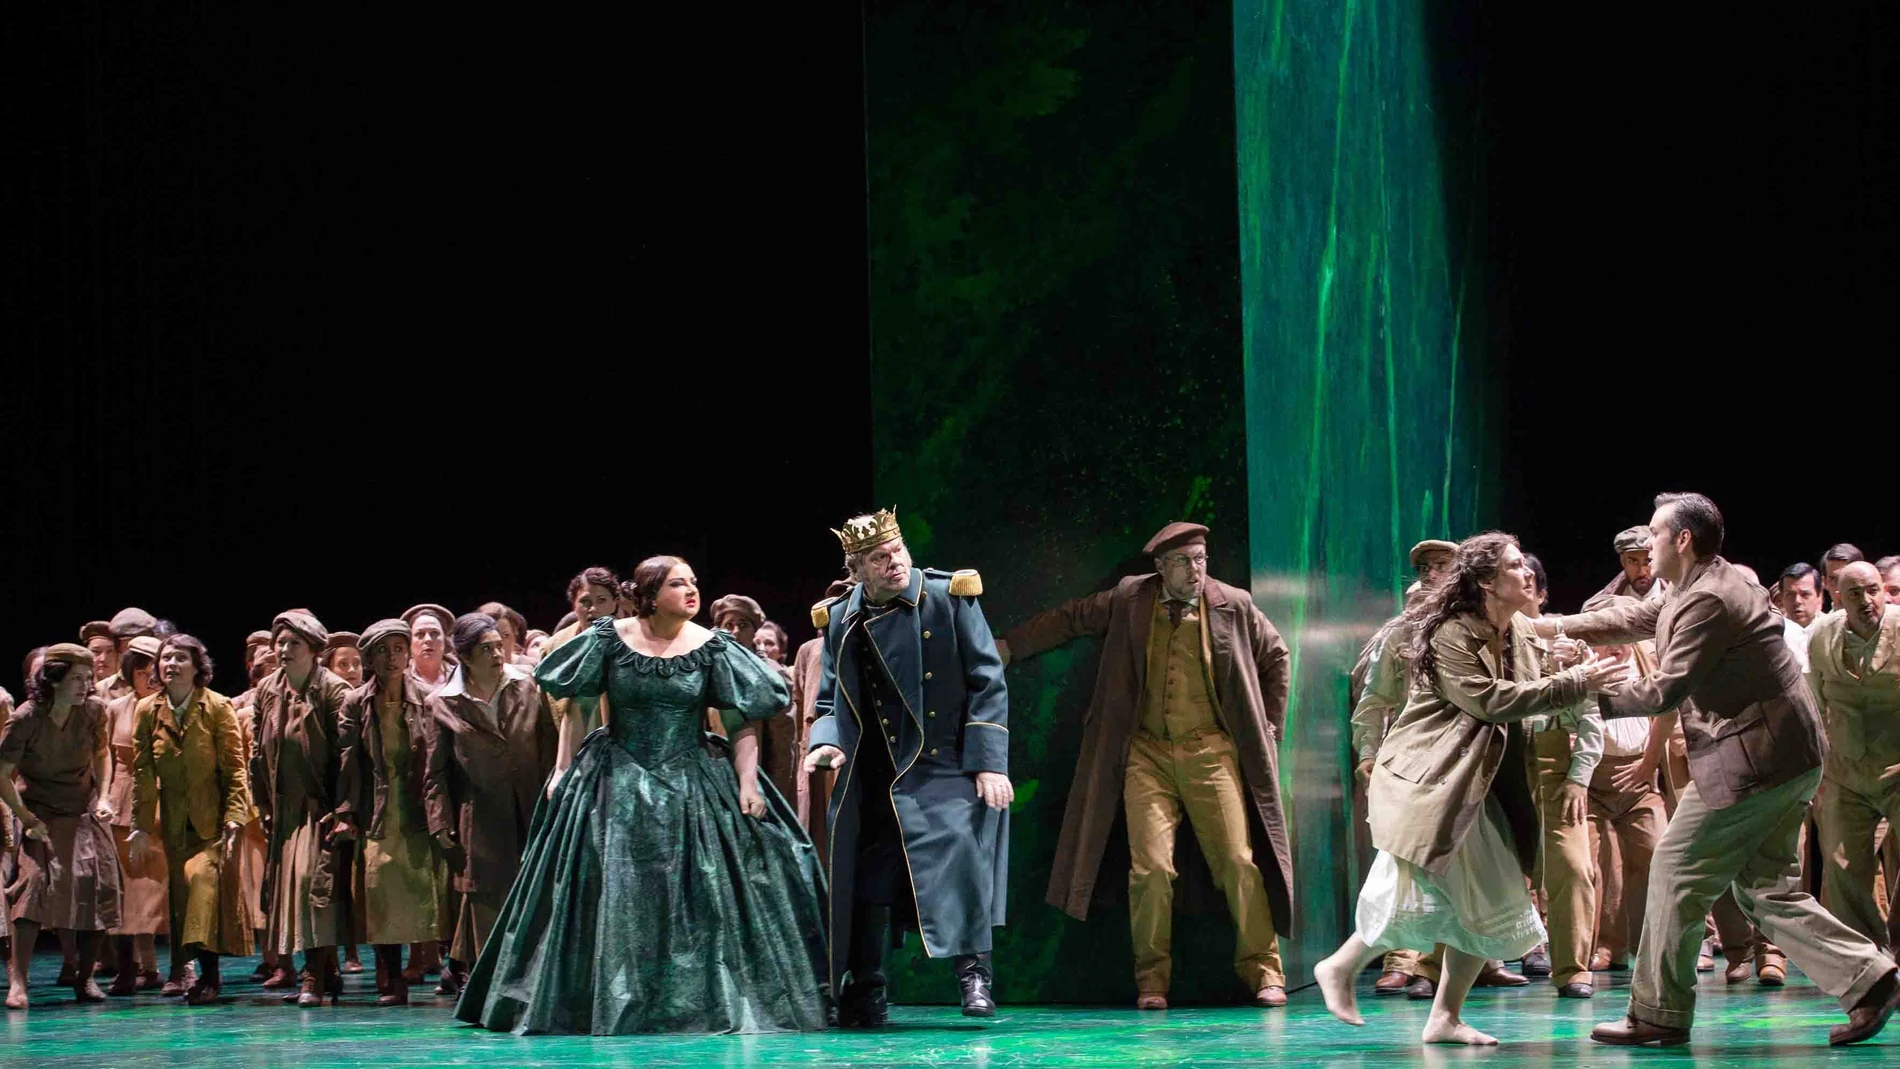 Una escena de "Nabucco", ópera en cartel en el Teatro Real